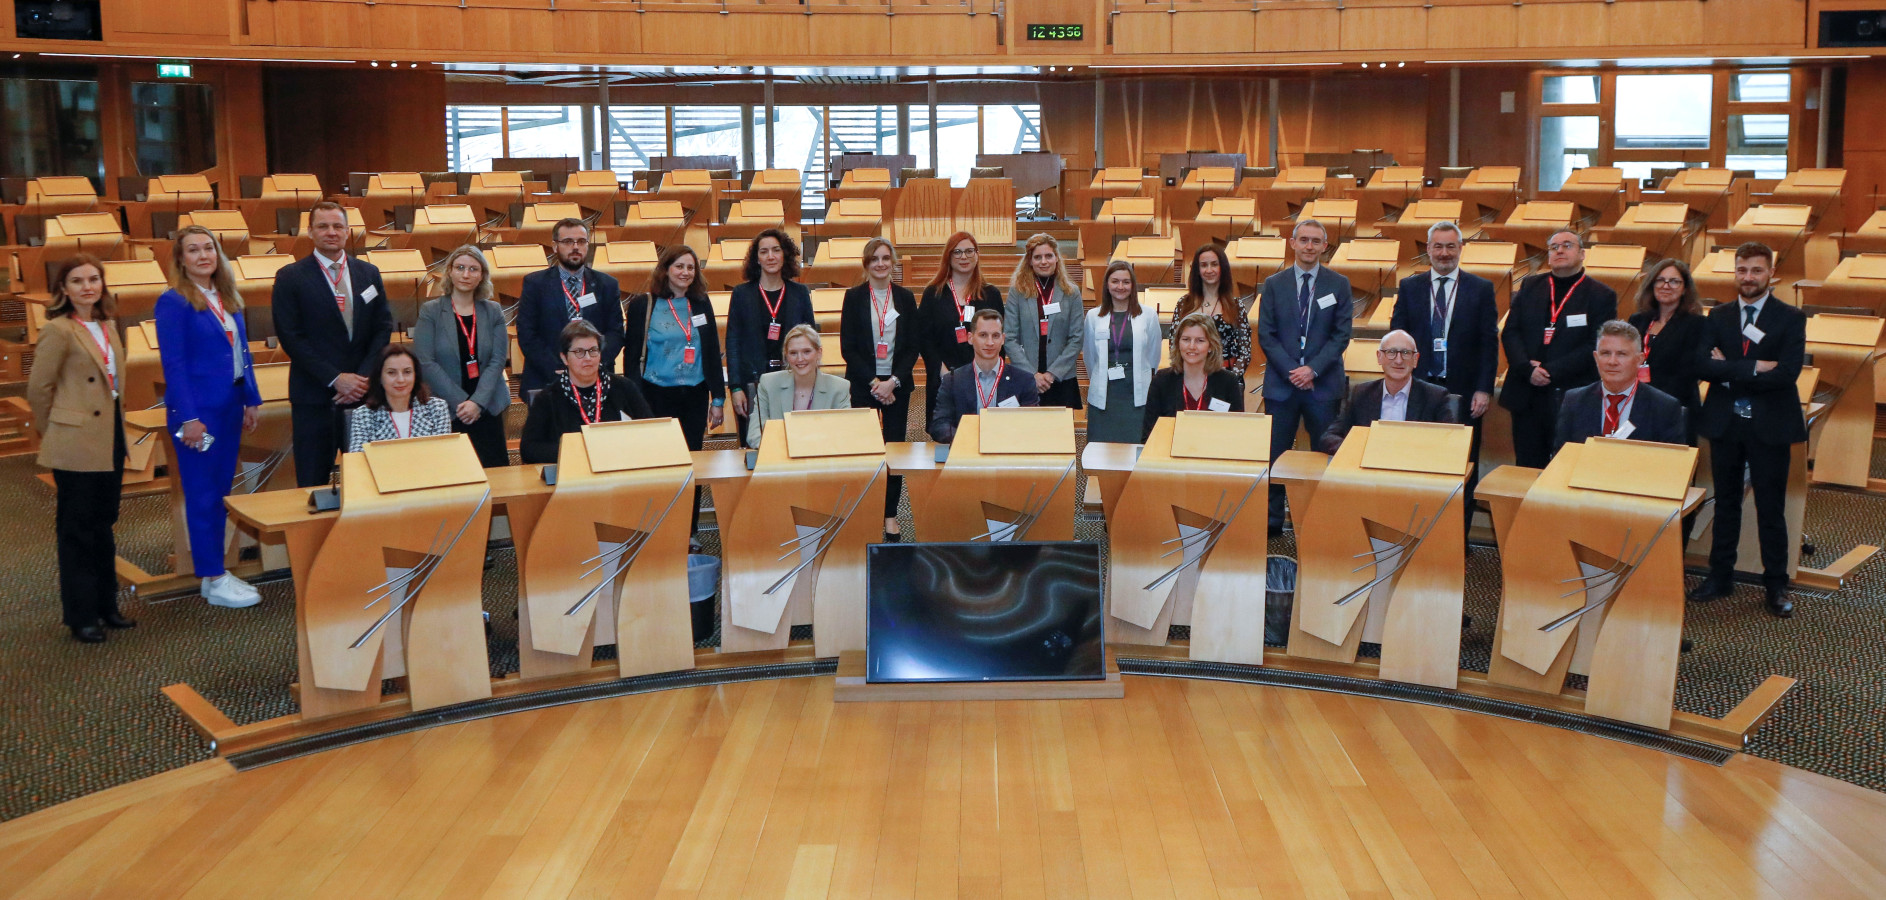 Els participants de la conferència, a la seu del Parlament d'Escòcia